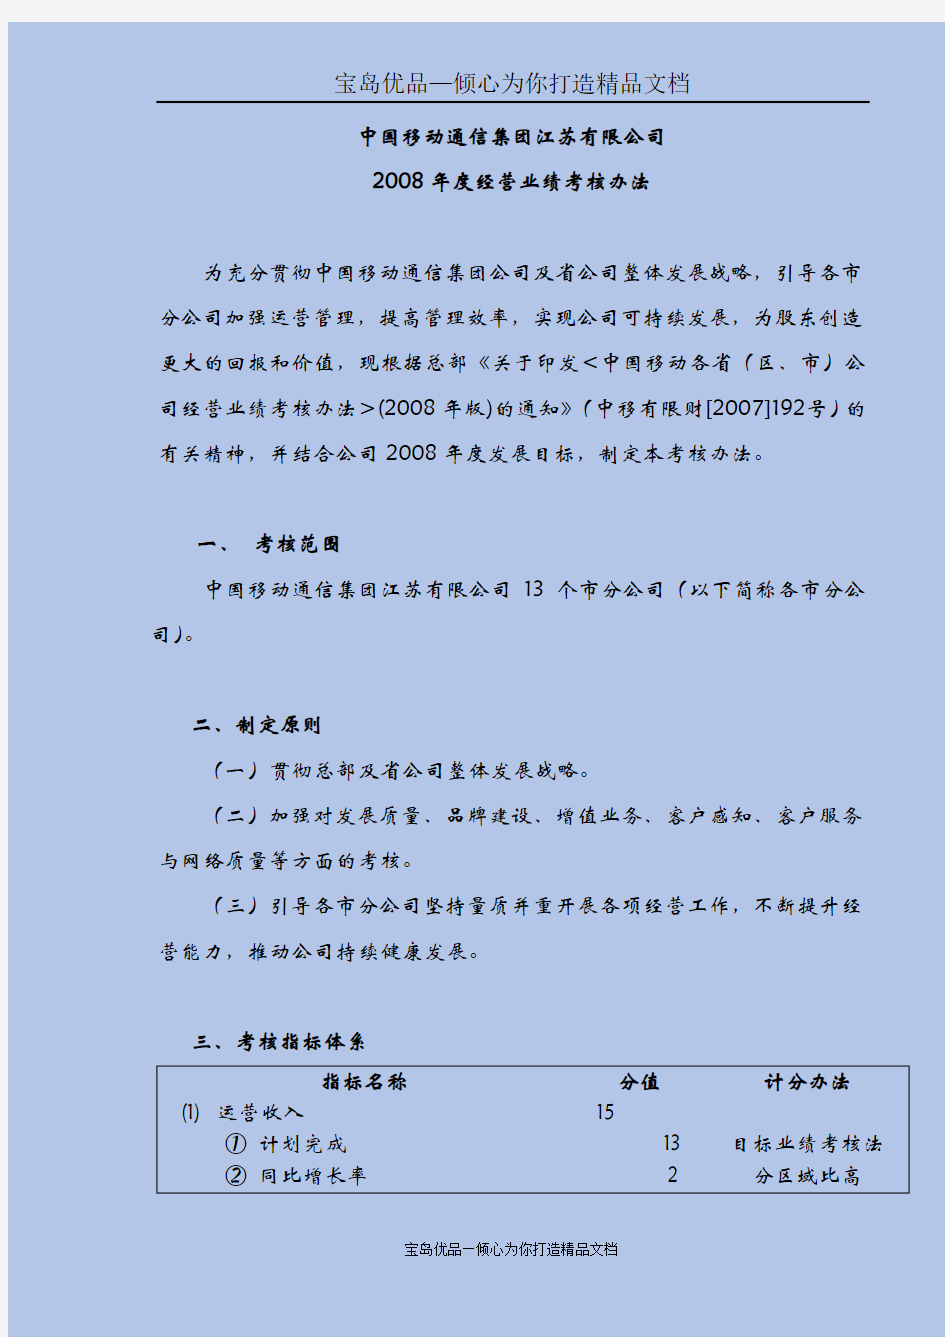 中国移动江苏公司某年度经营业绩考核办法